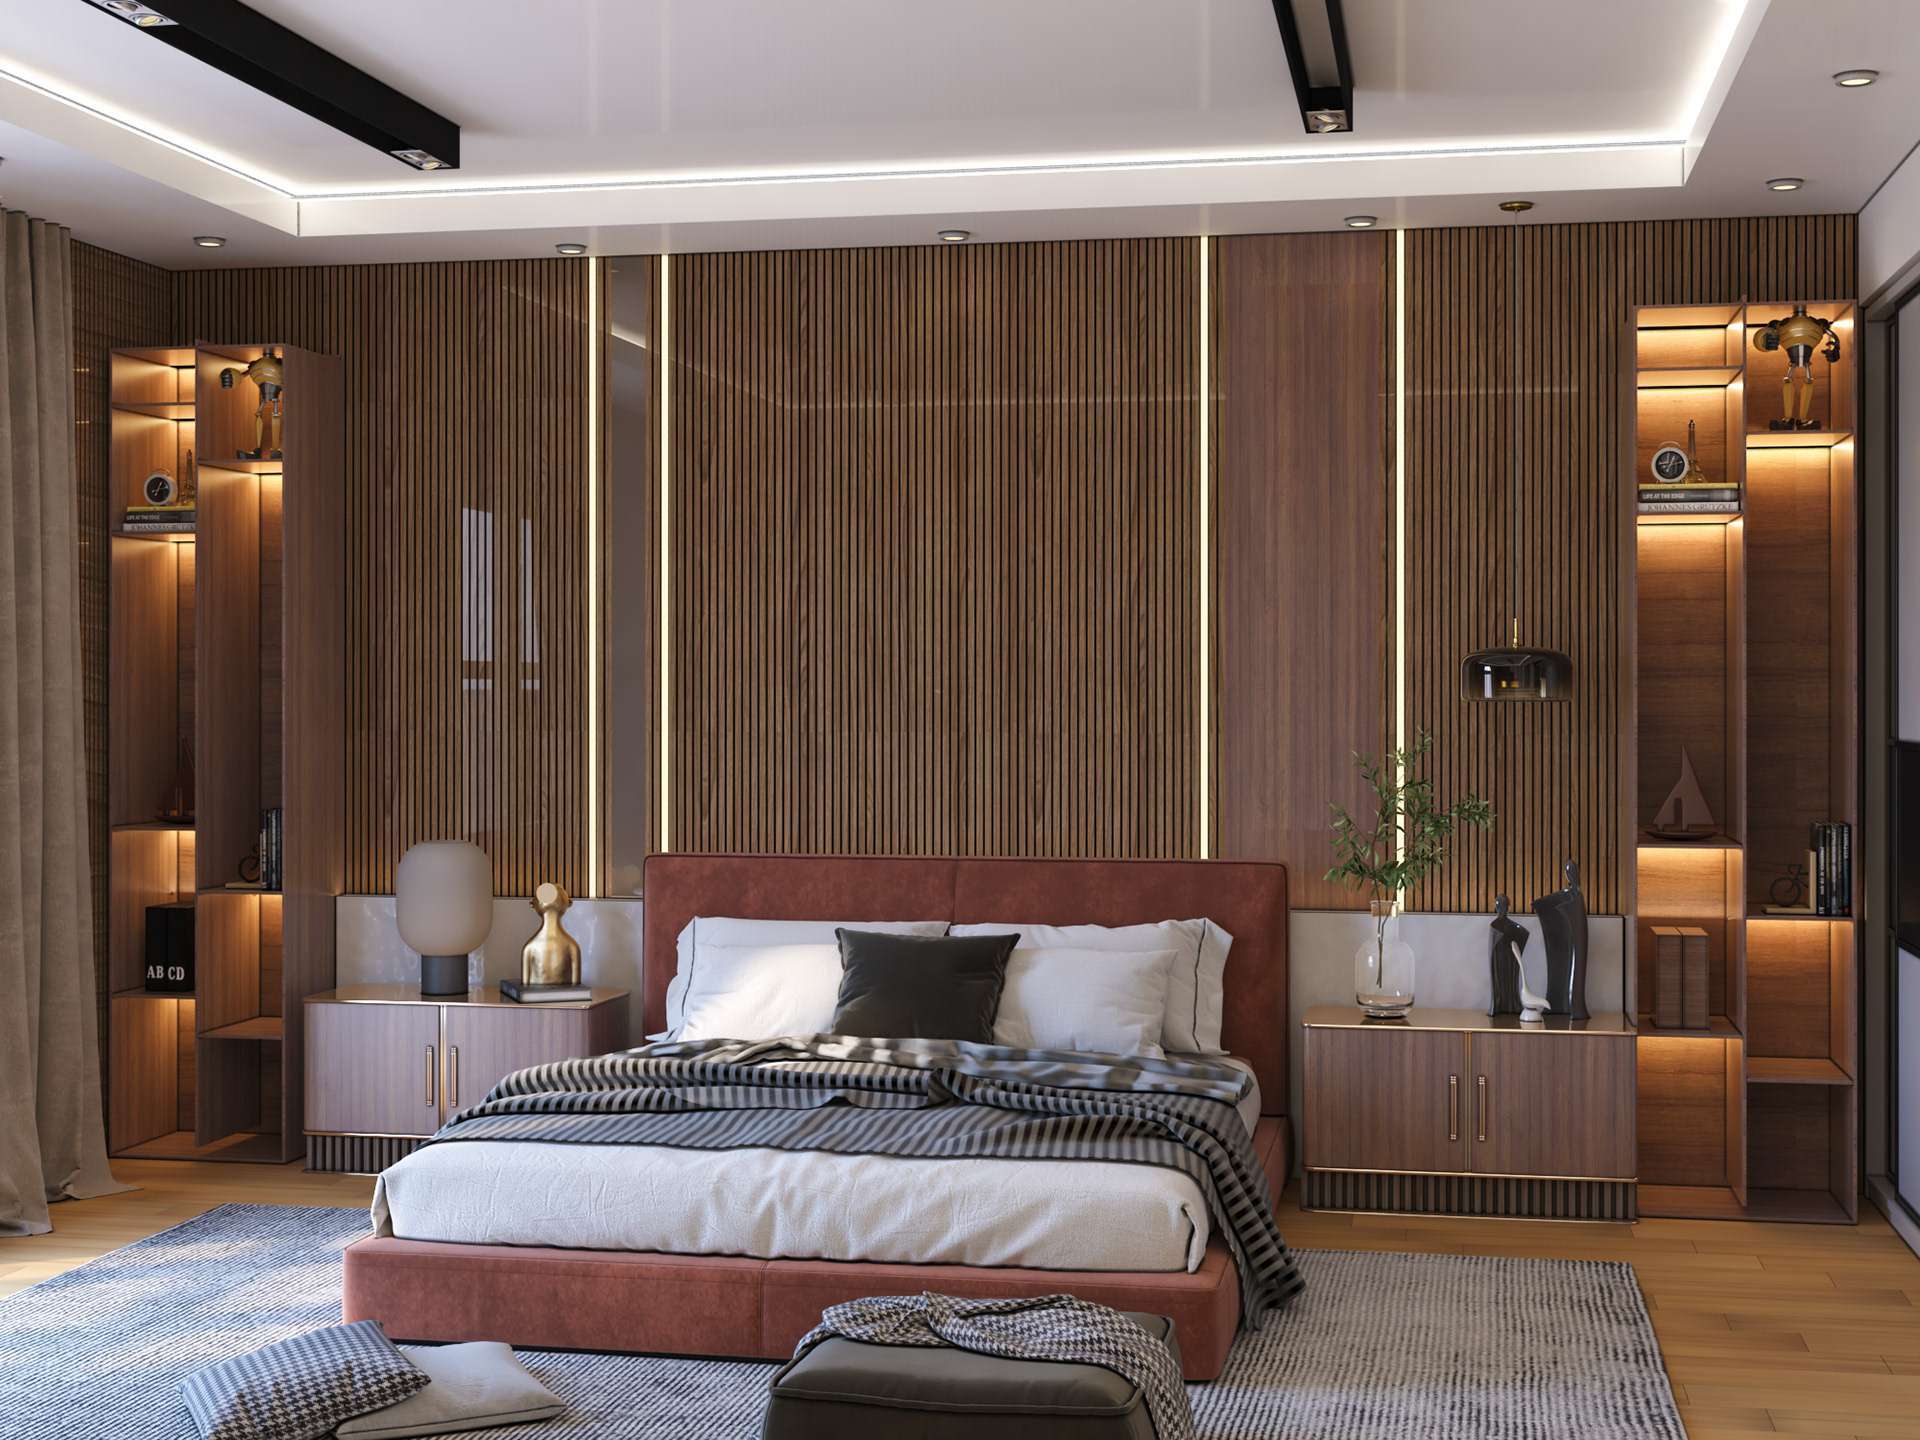 Màu nâu nhạt của tường kết hợp với màu trắng của trần nhà tạo nên không gian phòng ngủ hiện đại, nổi bật